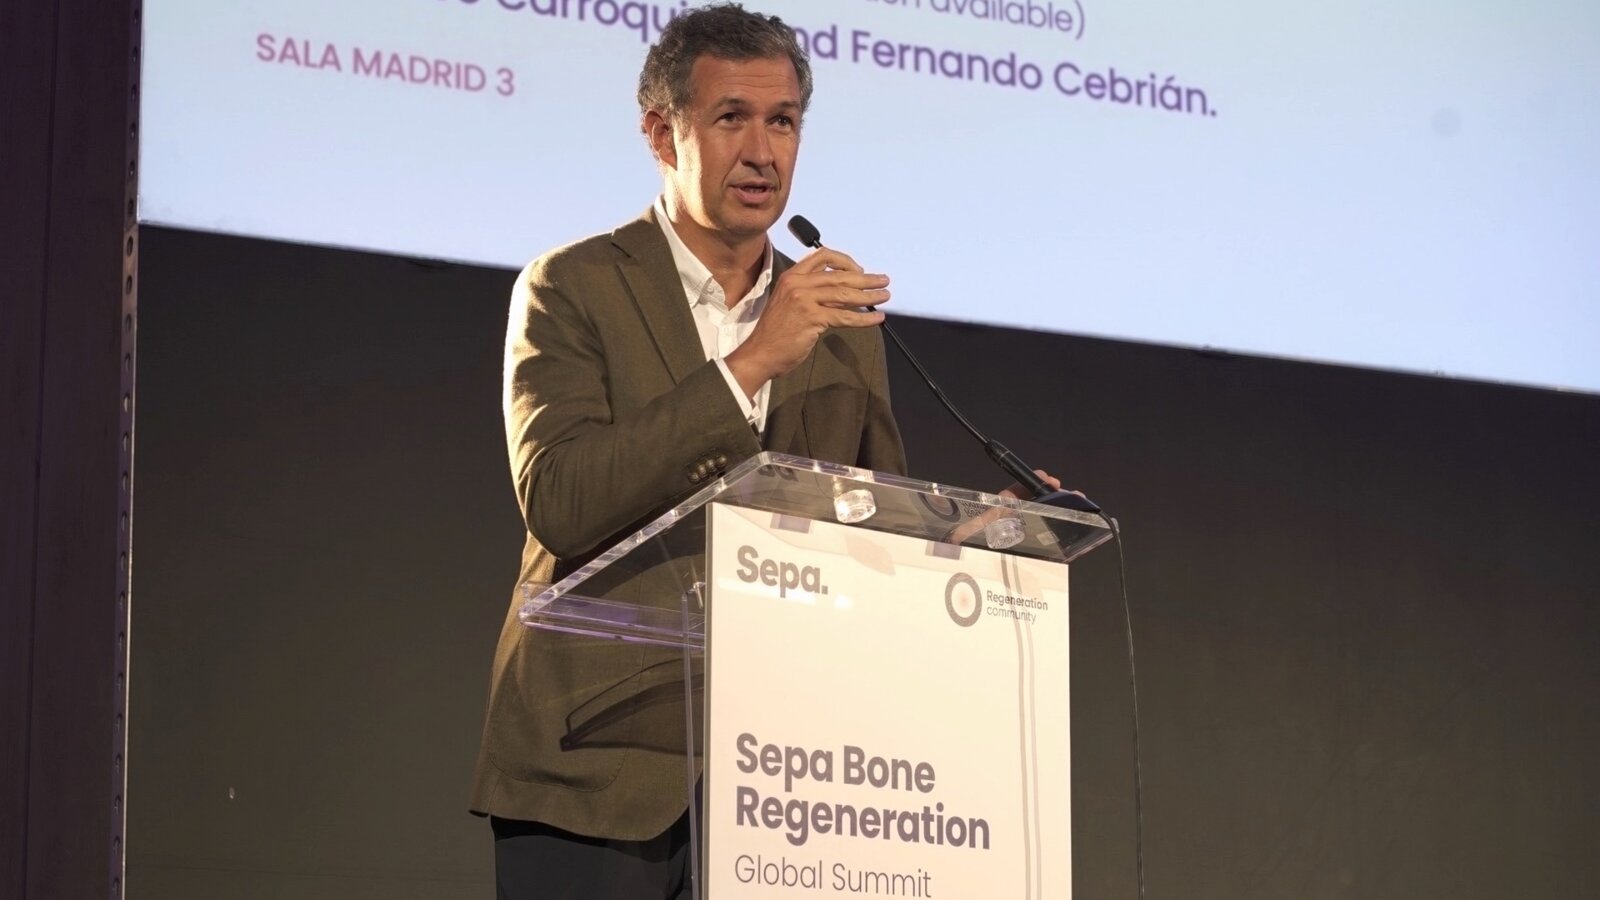 Cumbre mundial de regeneración ósea en Madrid